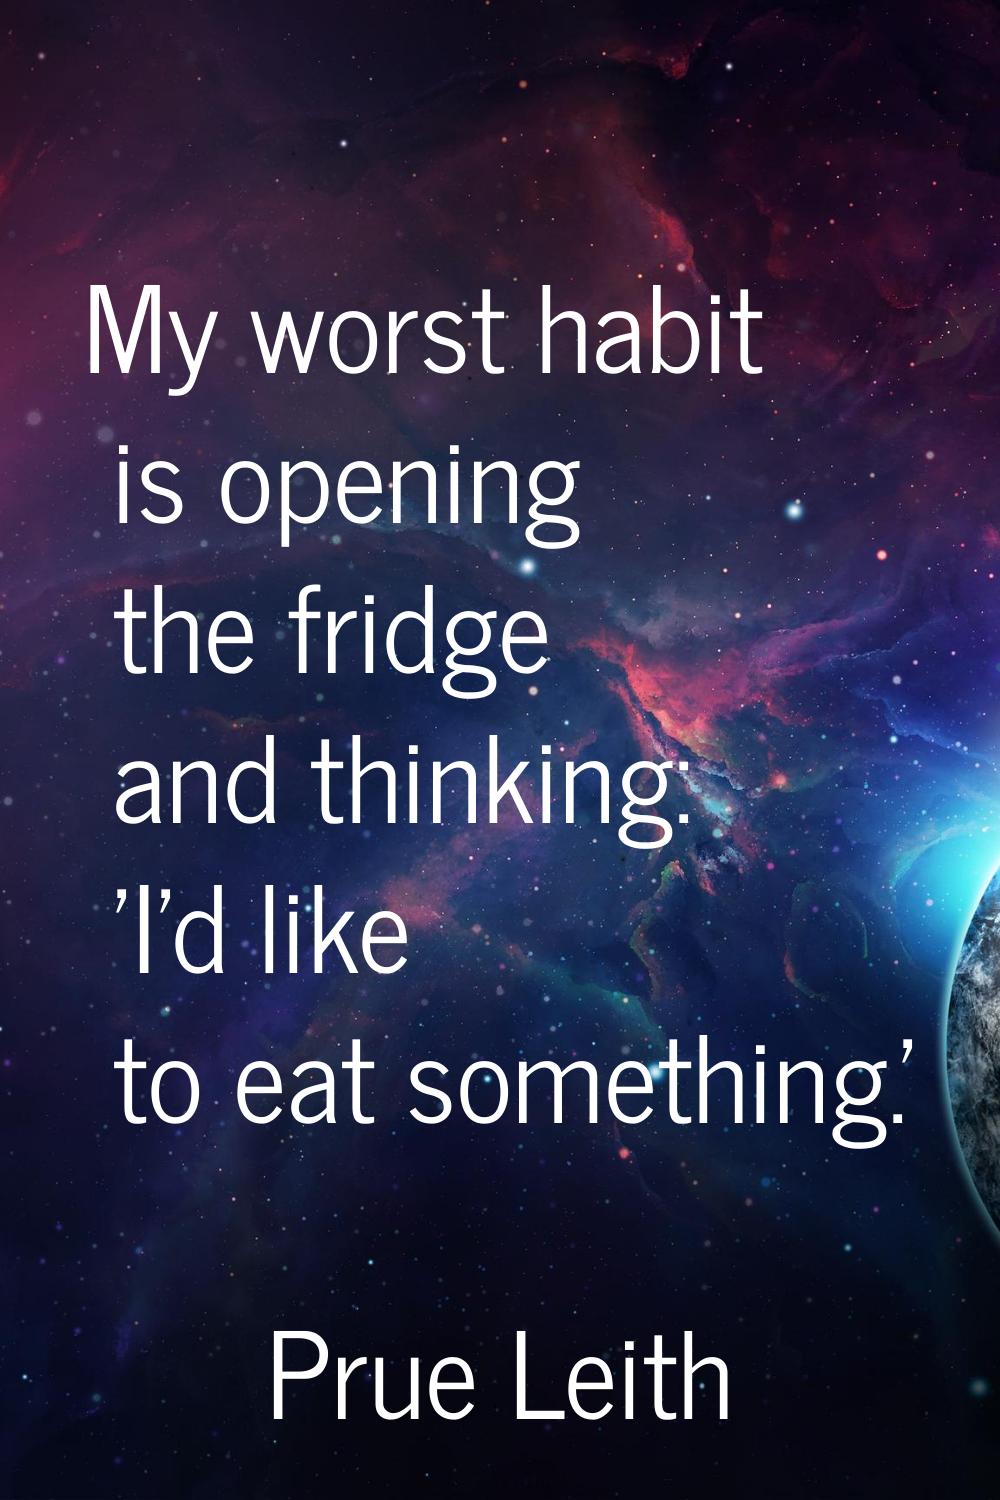 My worst habit is opening the fridge and thinking: 'I'd like to eat something.'